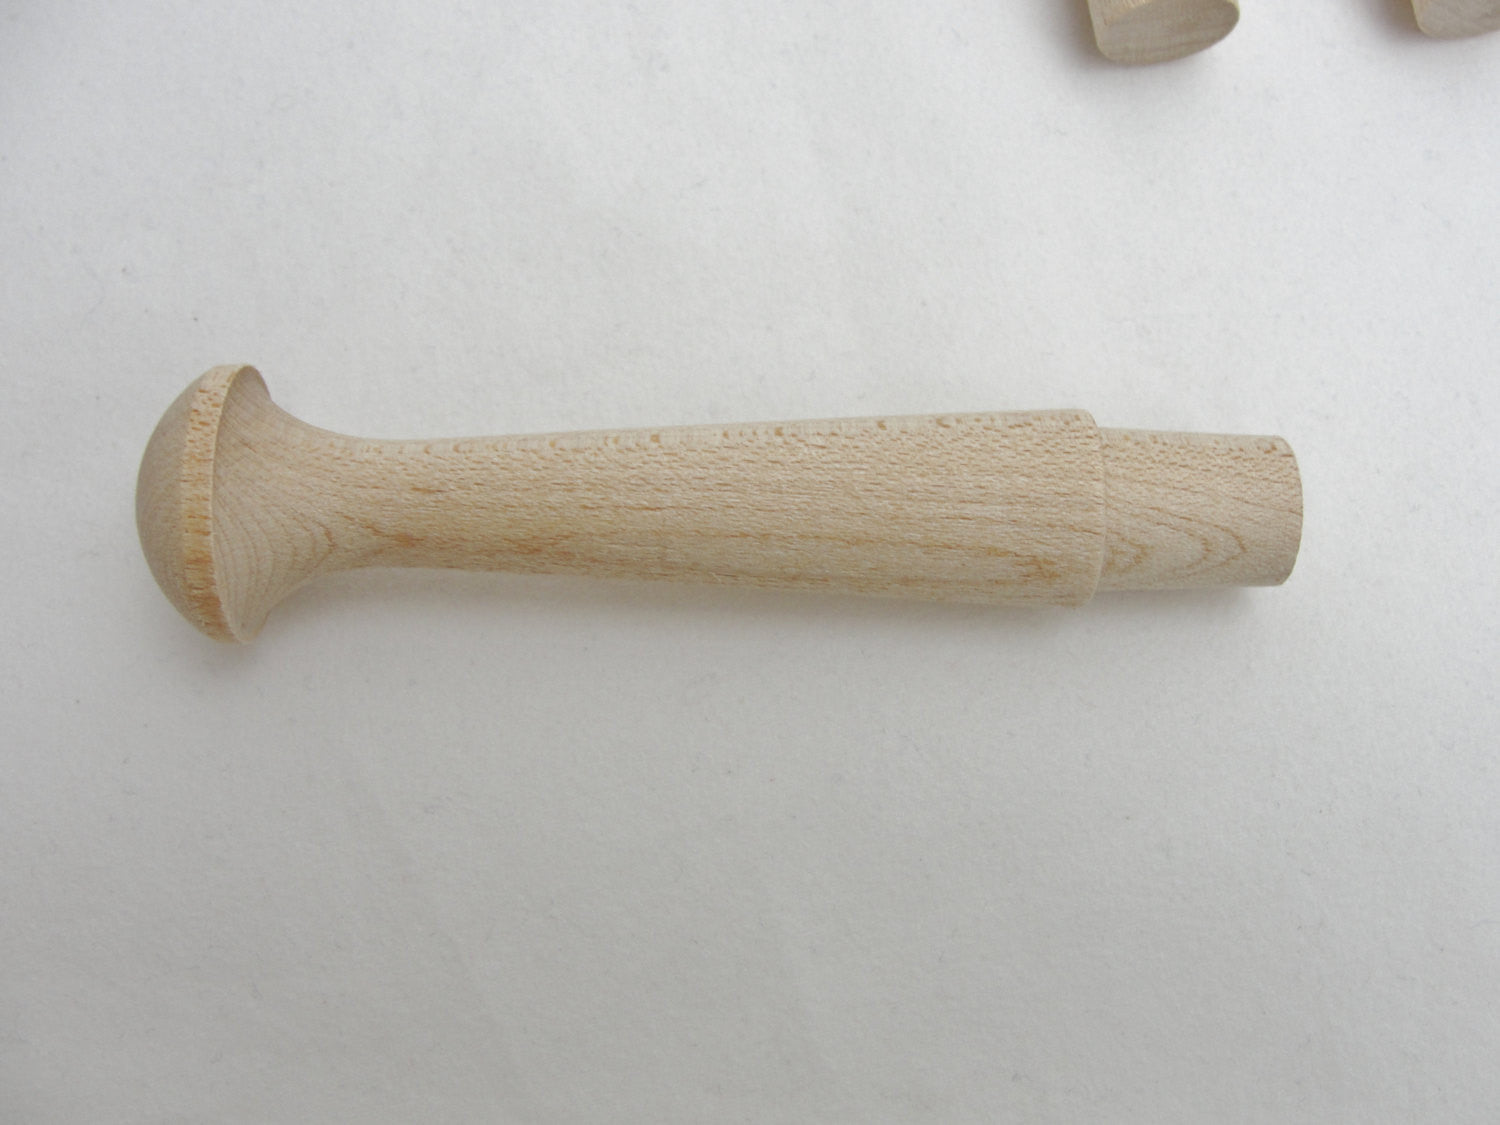 Wooden Shaker Pegs 3-1/2 inch Long